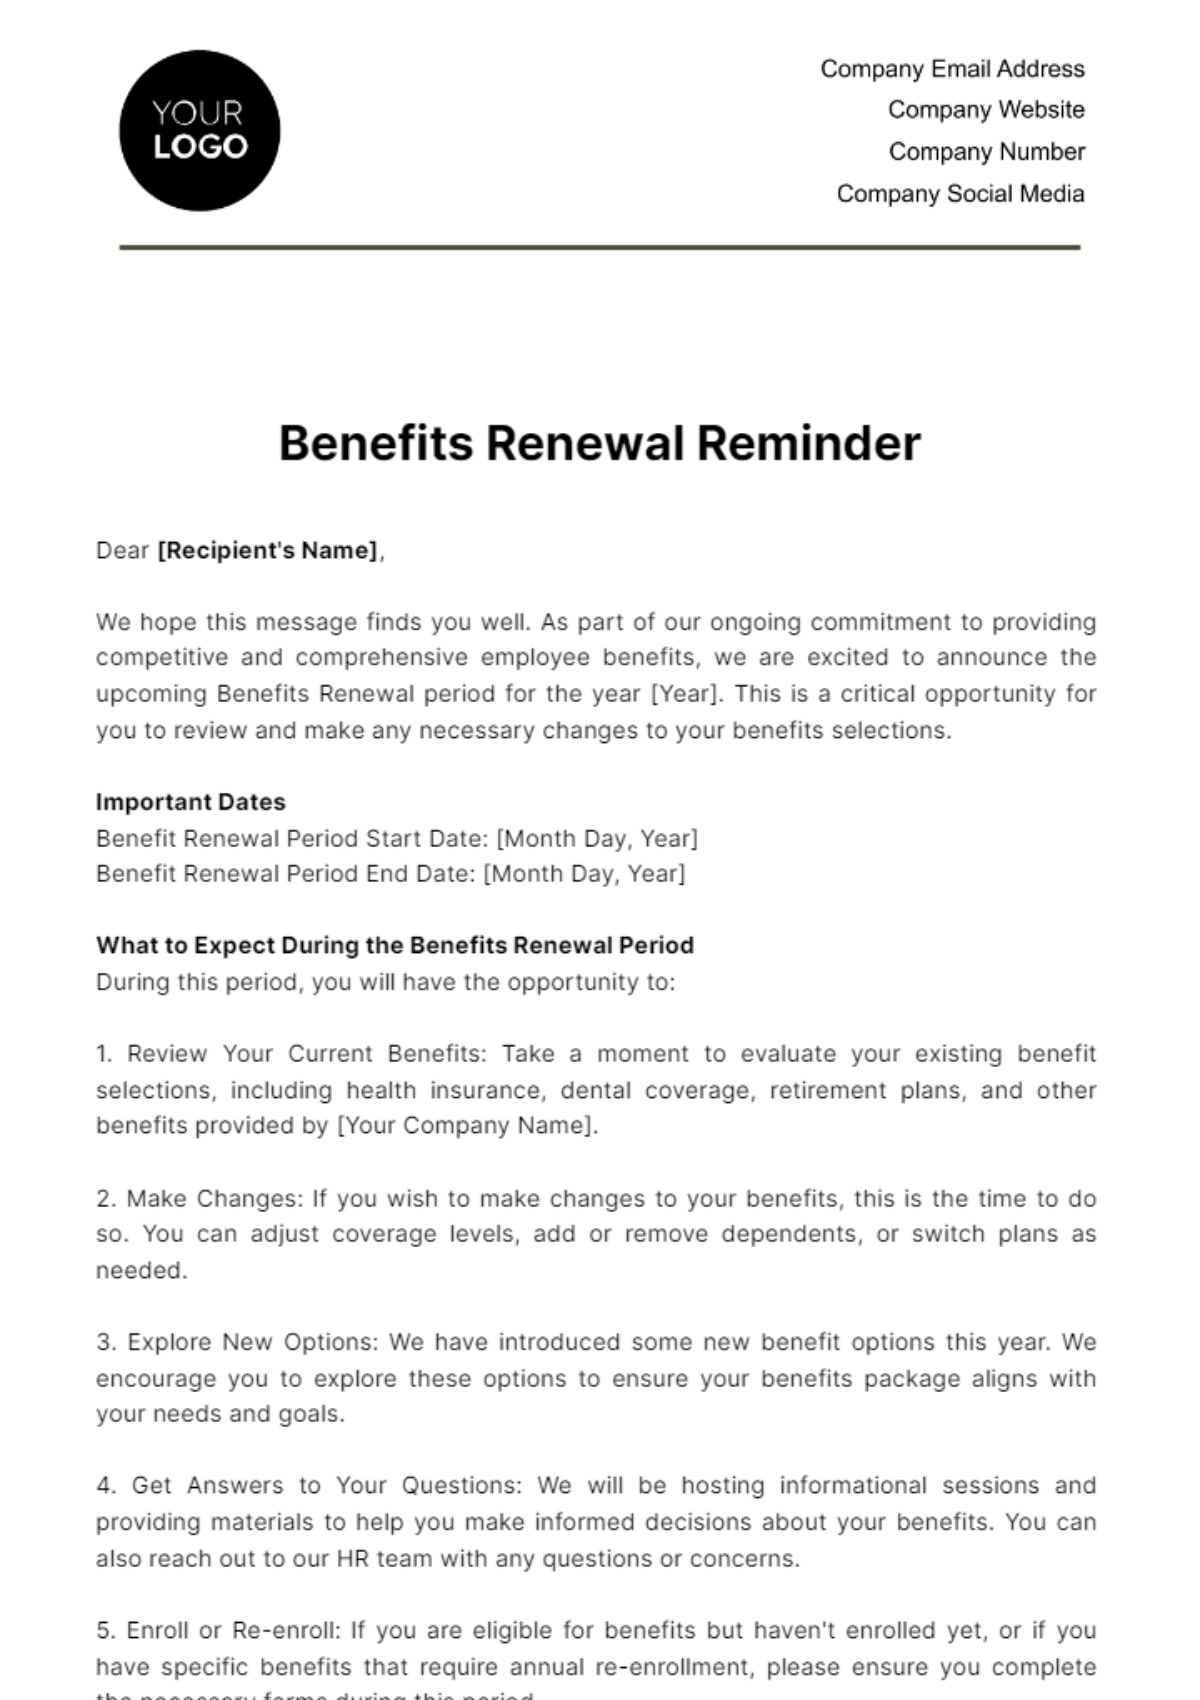 Free Benefits Renewal Reminder HR Template